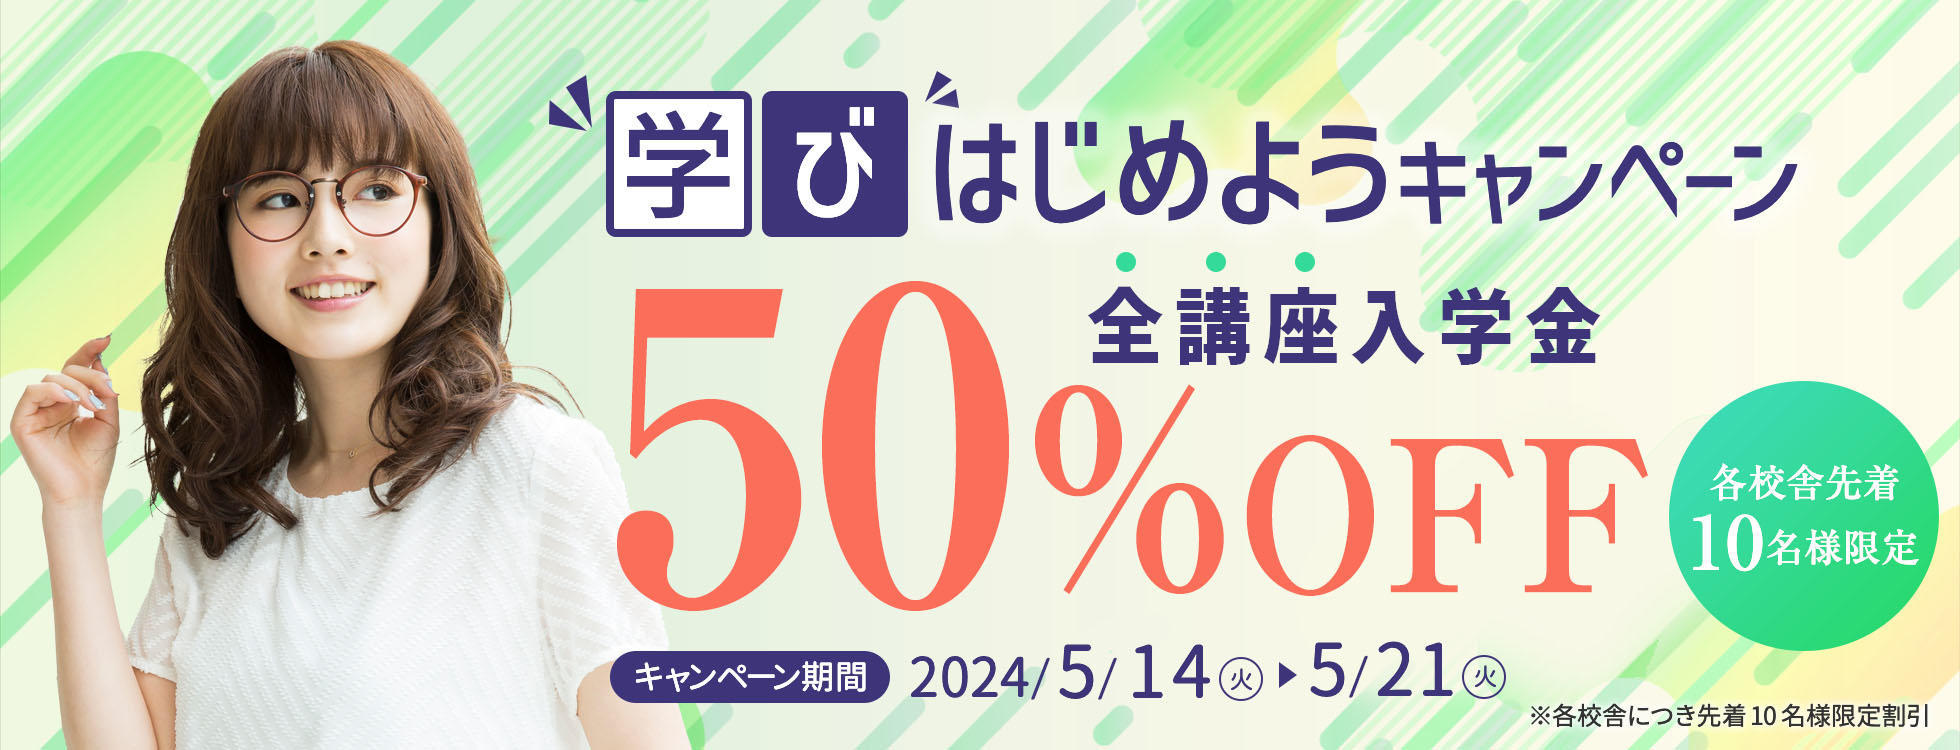 8日間限定【入学金50%OFF】学びはじめようキャンペーン